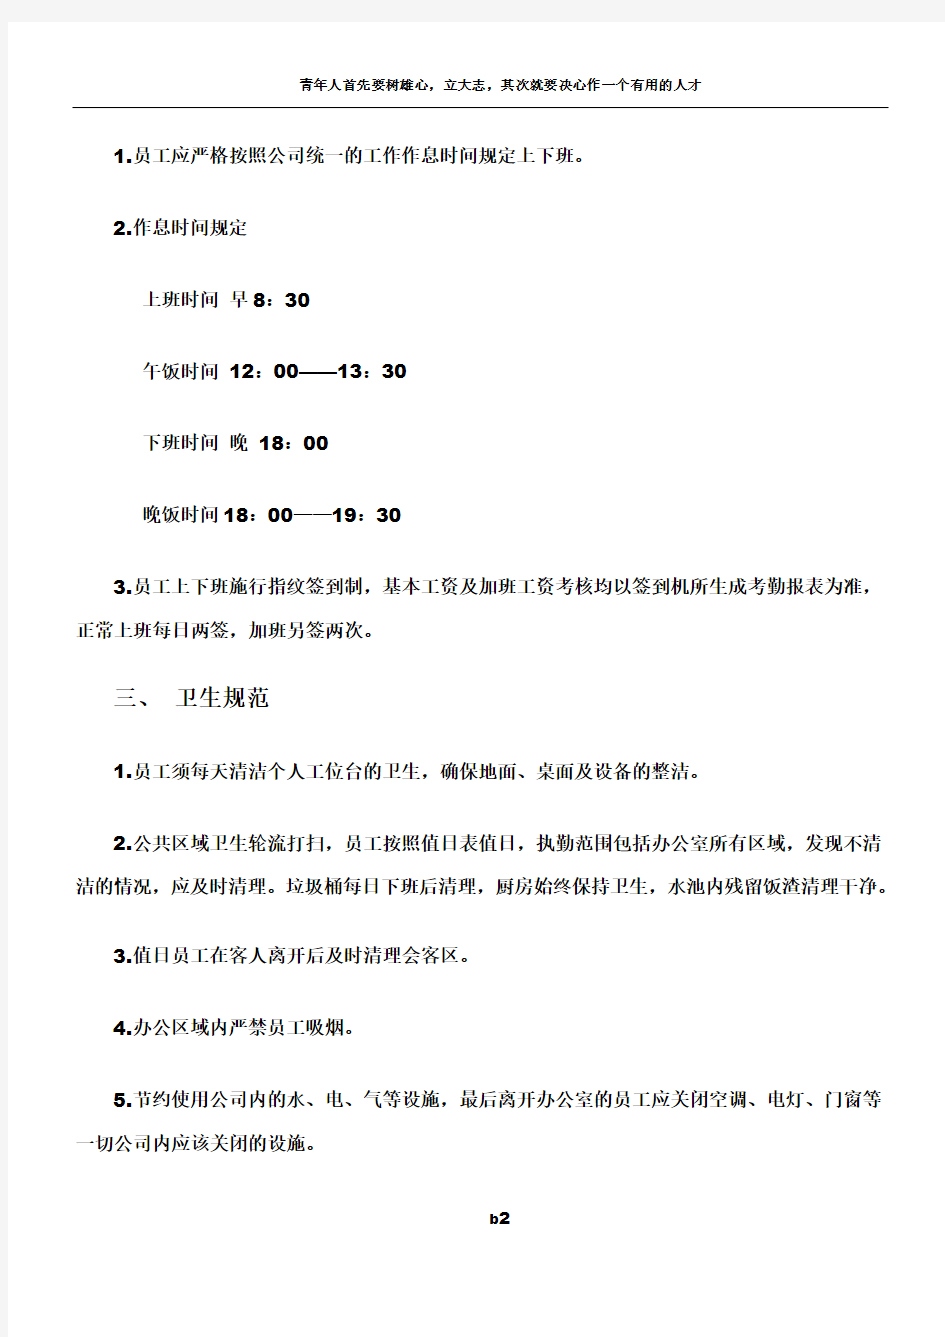 天津XX工程项目管理有限公司——规章制度